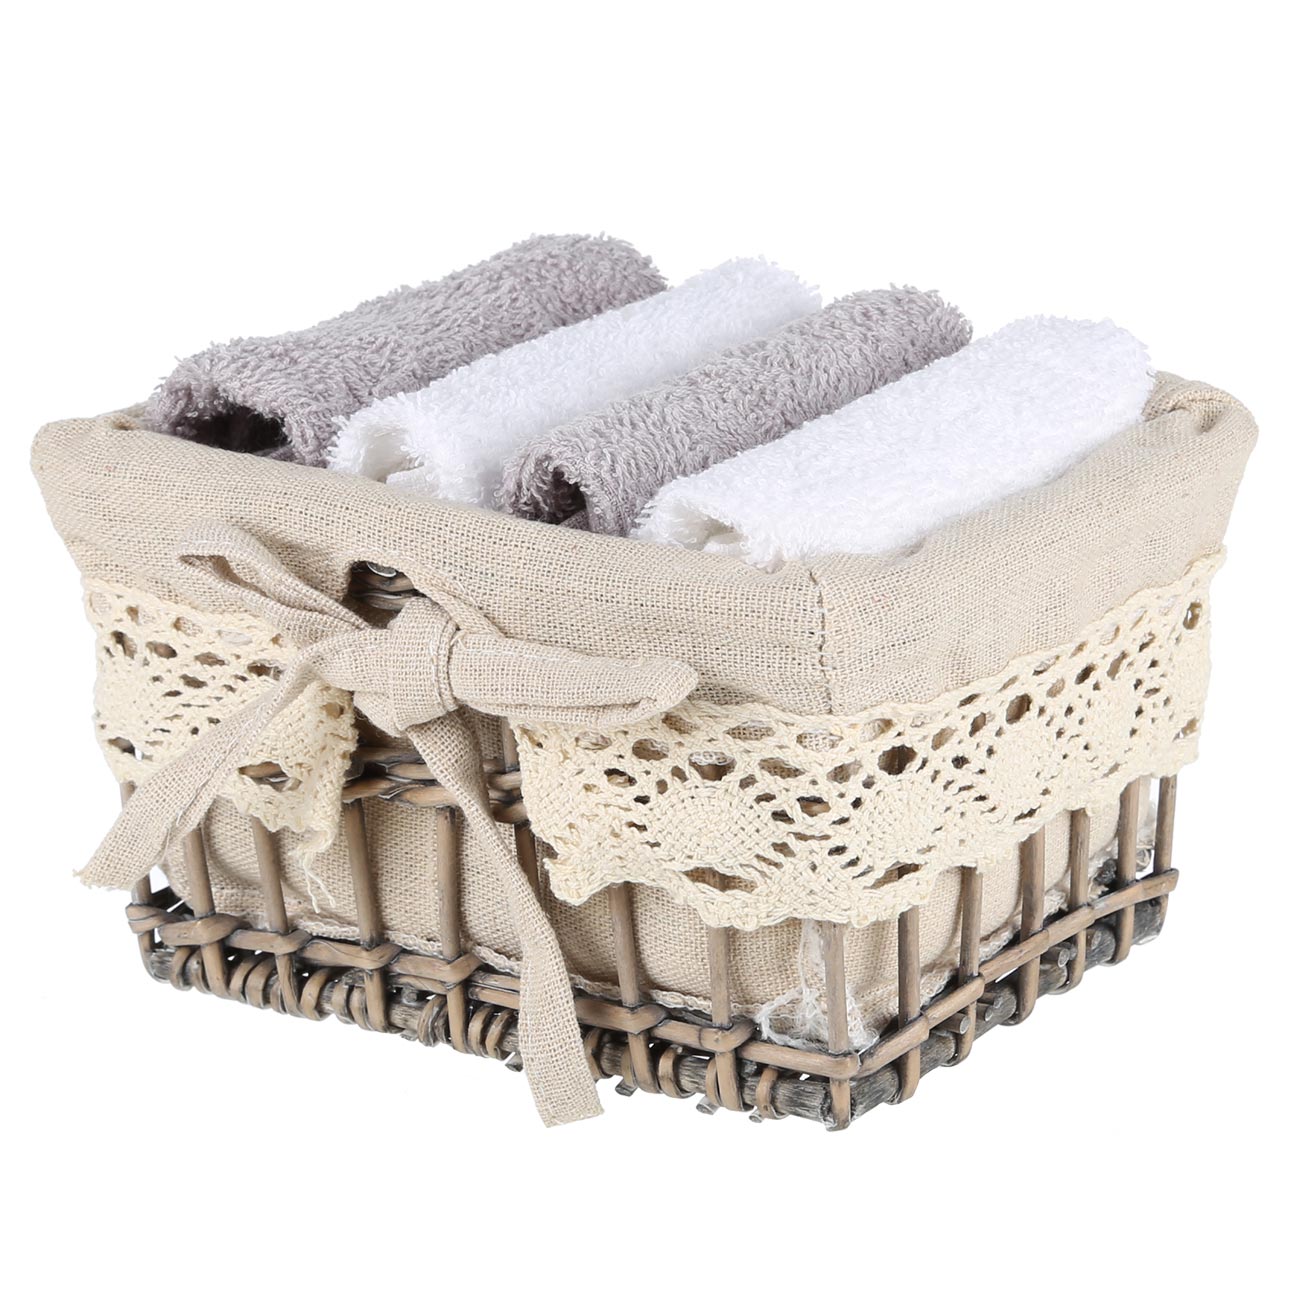 Полотенце, 30х30 см, 4 шт, в корзине, хлопок/дерево, белое/серое, Basket towel изображение № 3